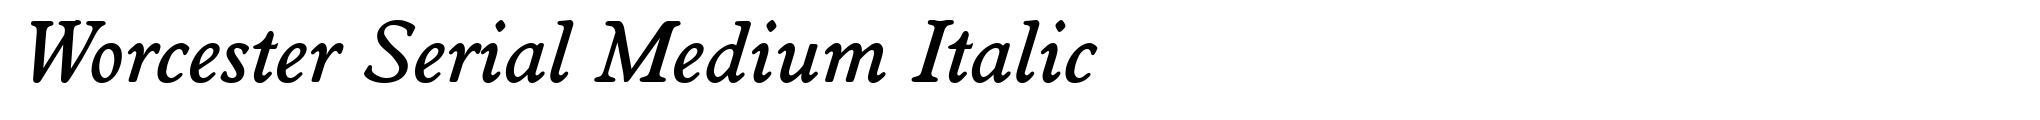 Worcester Serial Medium Italic image